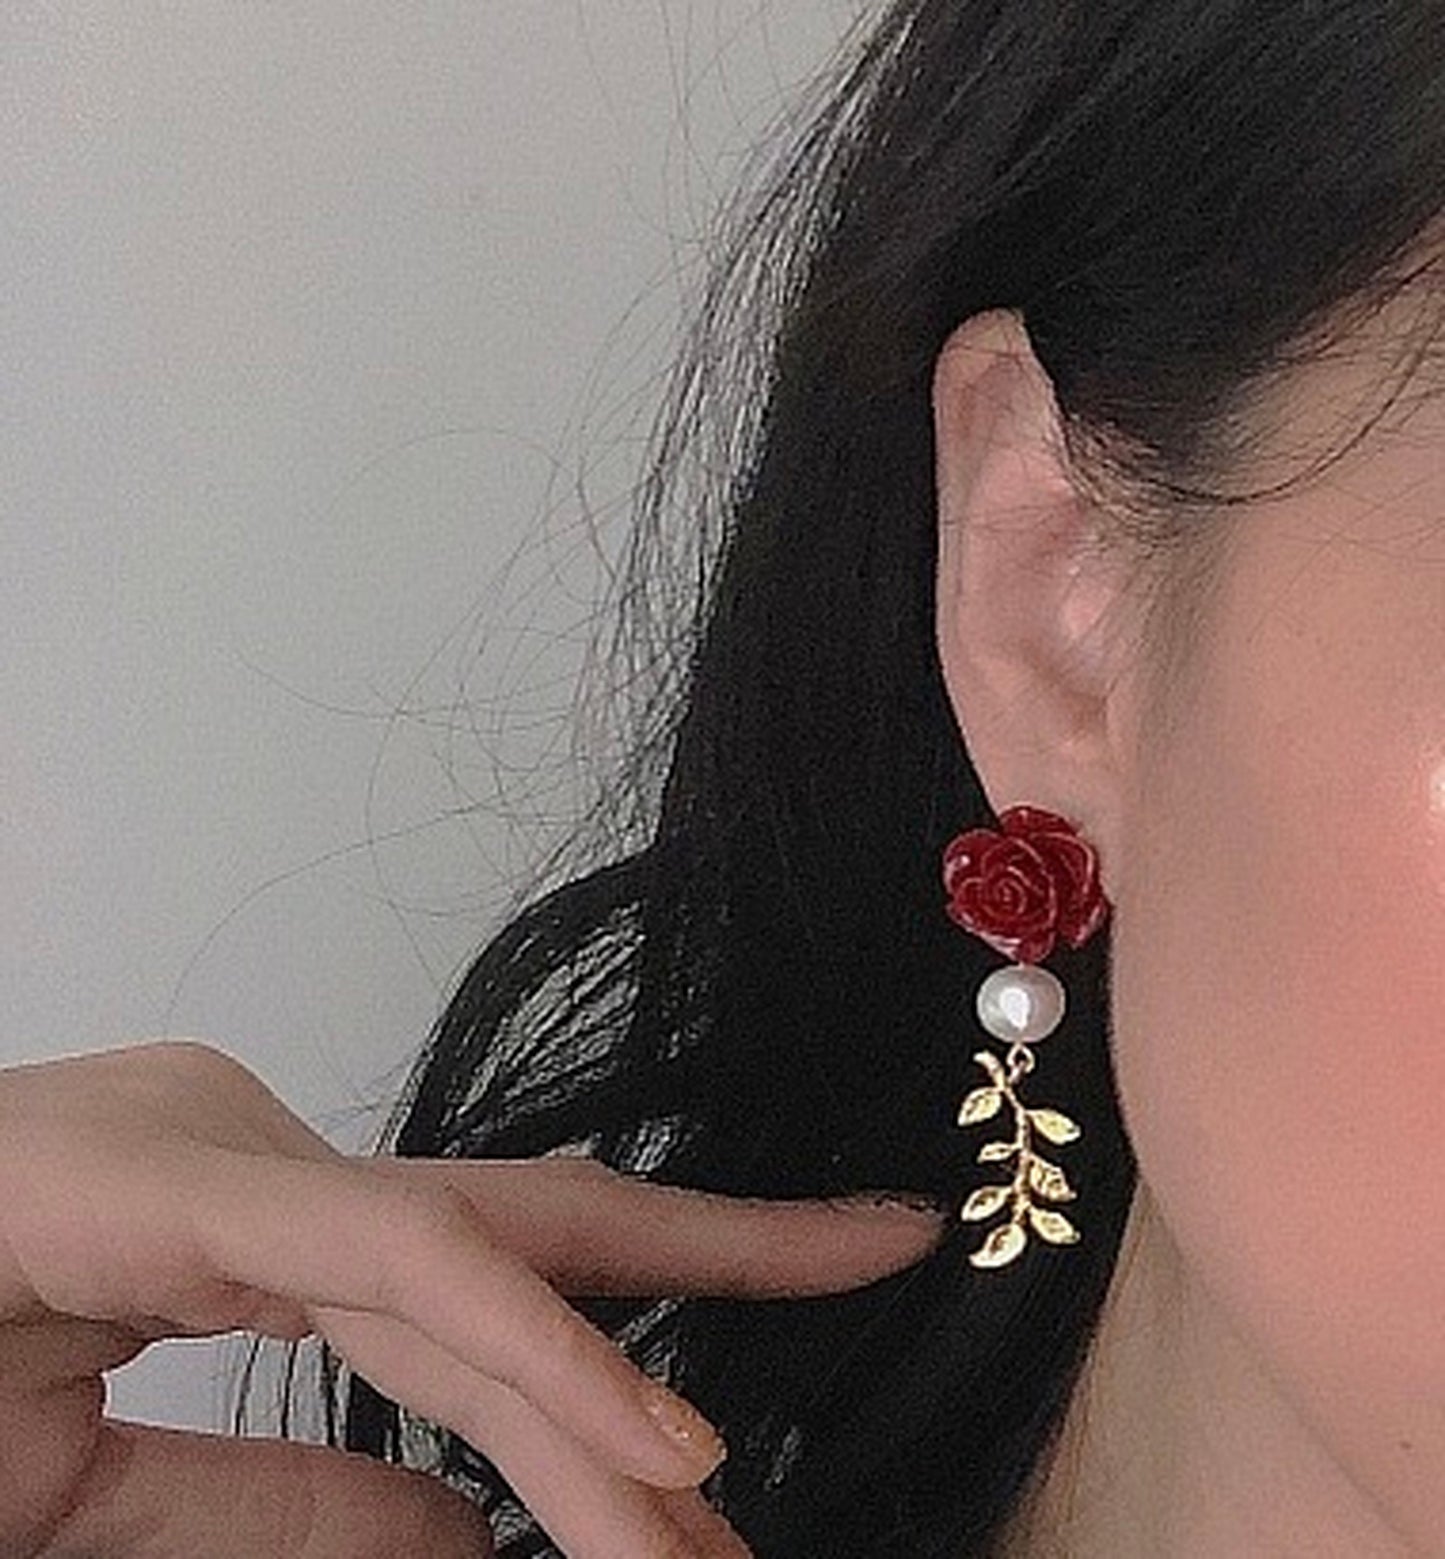 Princess Floral Earrings, Red Rose Wreath Earrings, Vintage Style Pearl Flower Earrings, Valentine's Day Earrings, Elegant Romantic Jewelry